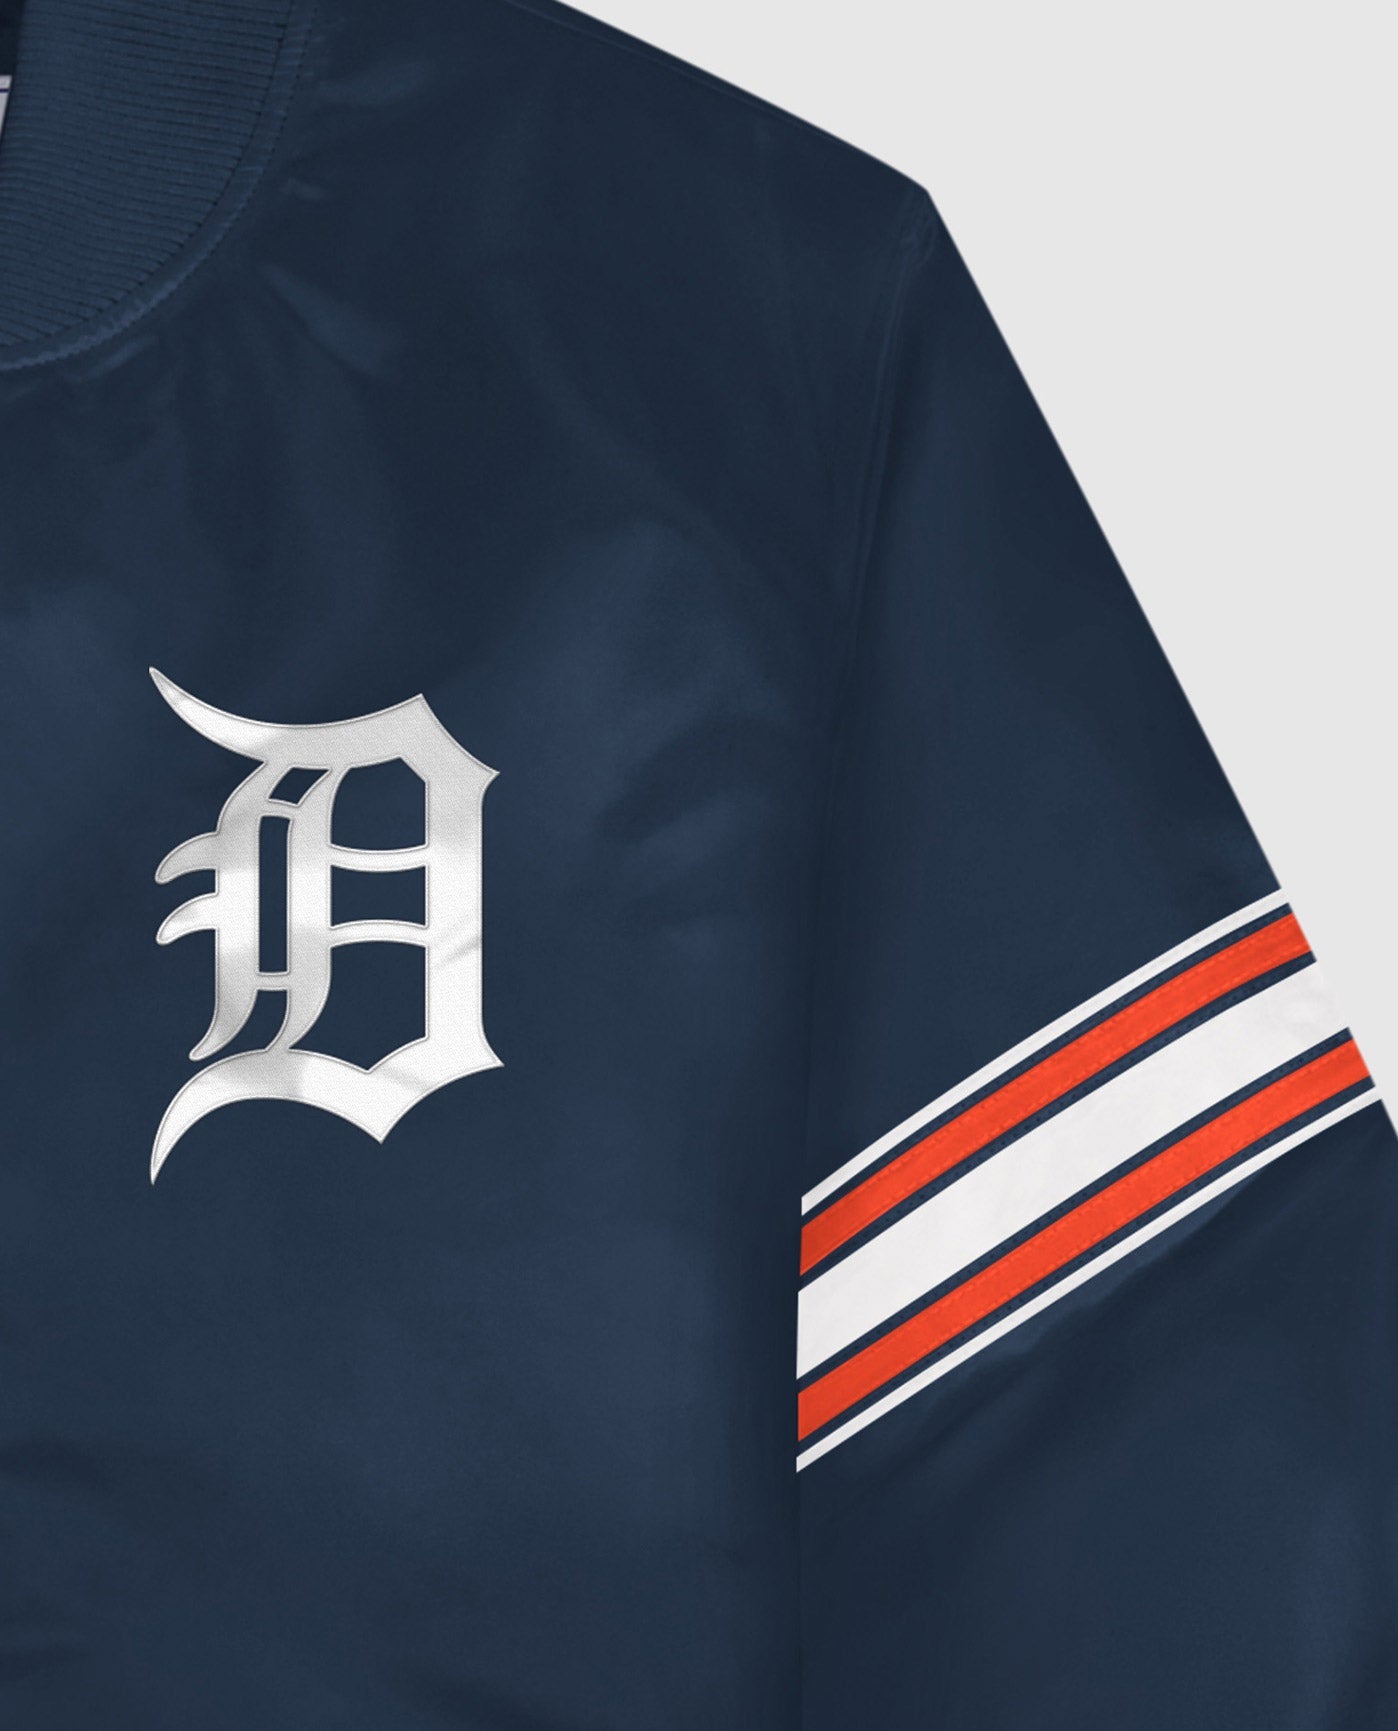 Youth White/Navy Detroit Tigers V-Neck T-Shirt 